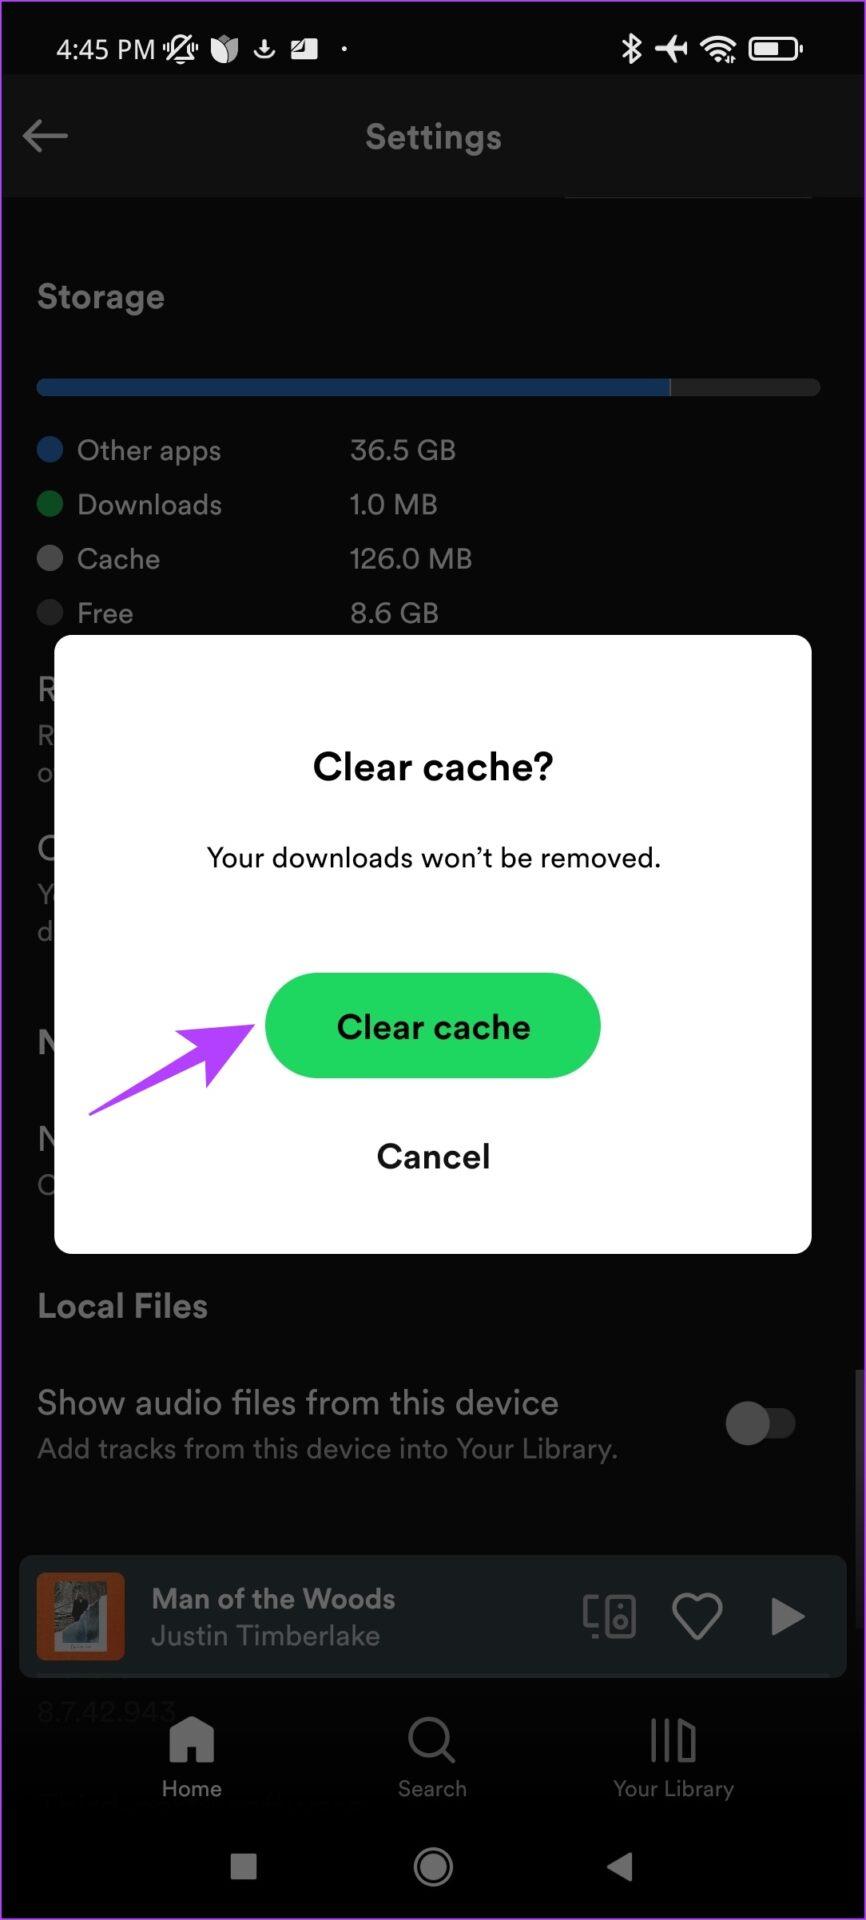 Comment vider le cache sur Spotify et que se passe-t-il lorsque vous le faites